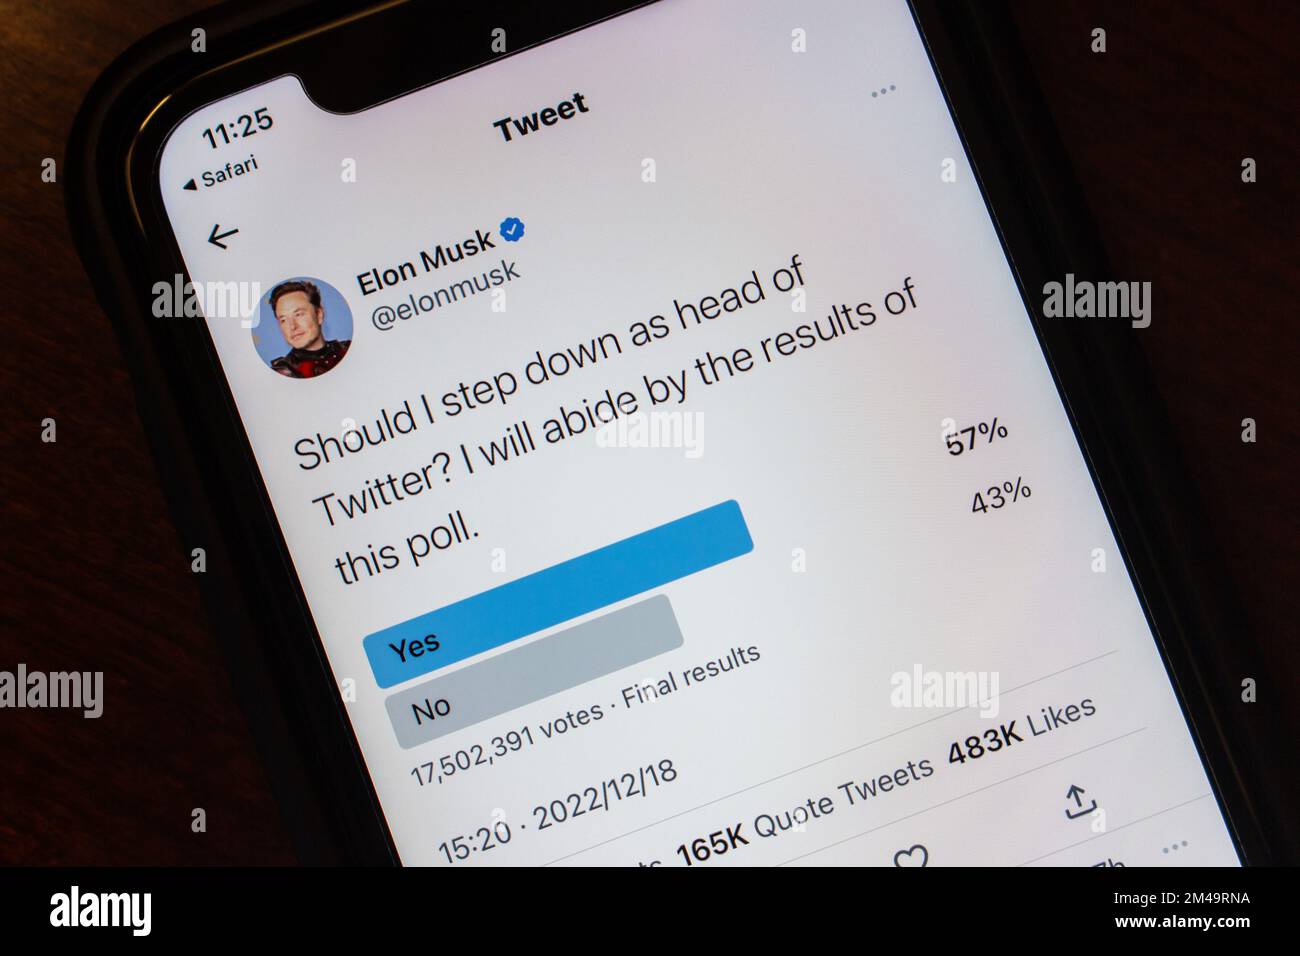 Vancouver, CANADA - décembre 19 2022 : Un vote dans un sondage Twitter « devrais-je descendre à la tête de Twitter? » Par Elon Musk (@elonmusk) sur Twitter vu dans iPhone. Banque D'Images